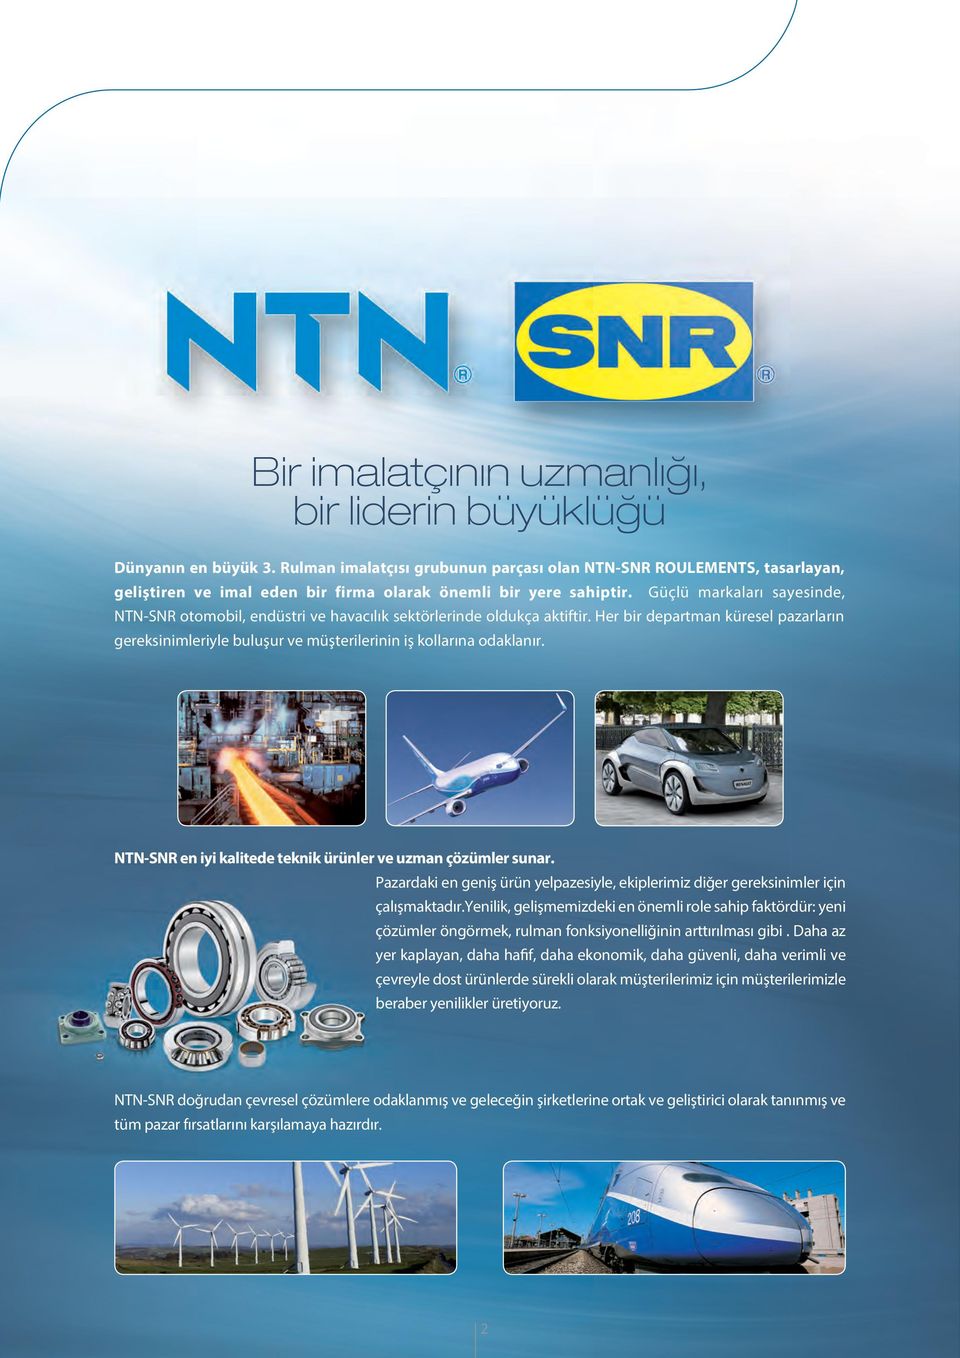 Güçlü markaları sayesinde, NTN-SNR otomobil, endüstri ve havacılık sektörlerinde oldukça aktiftir.